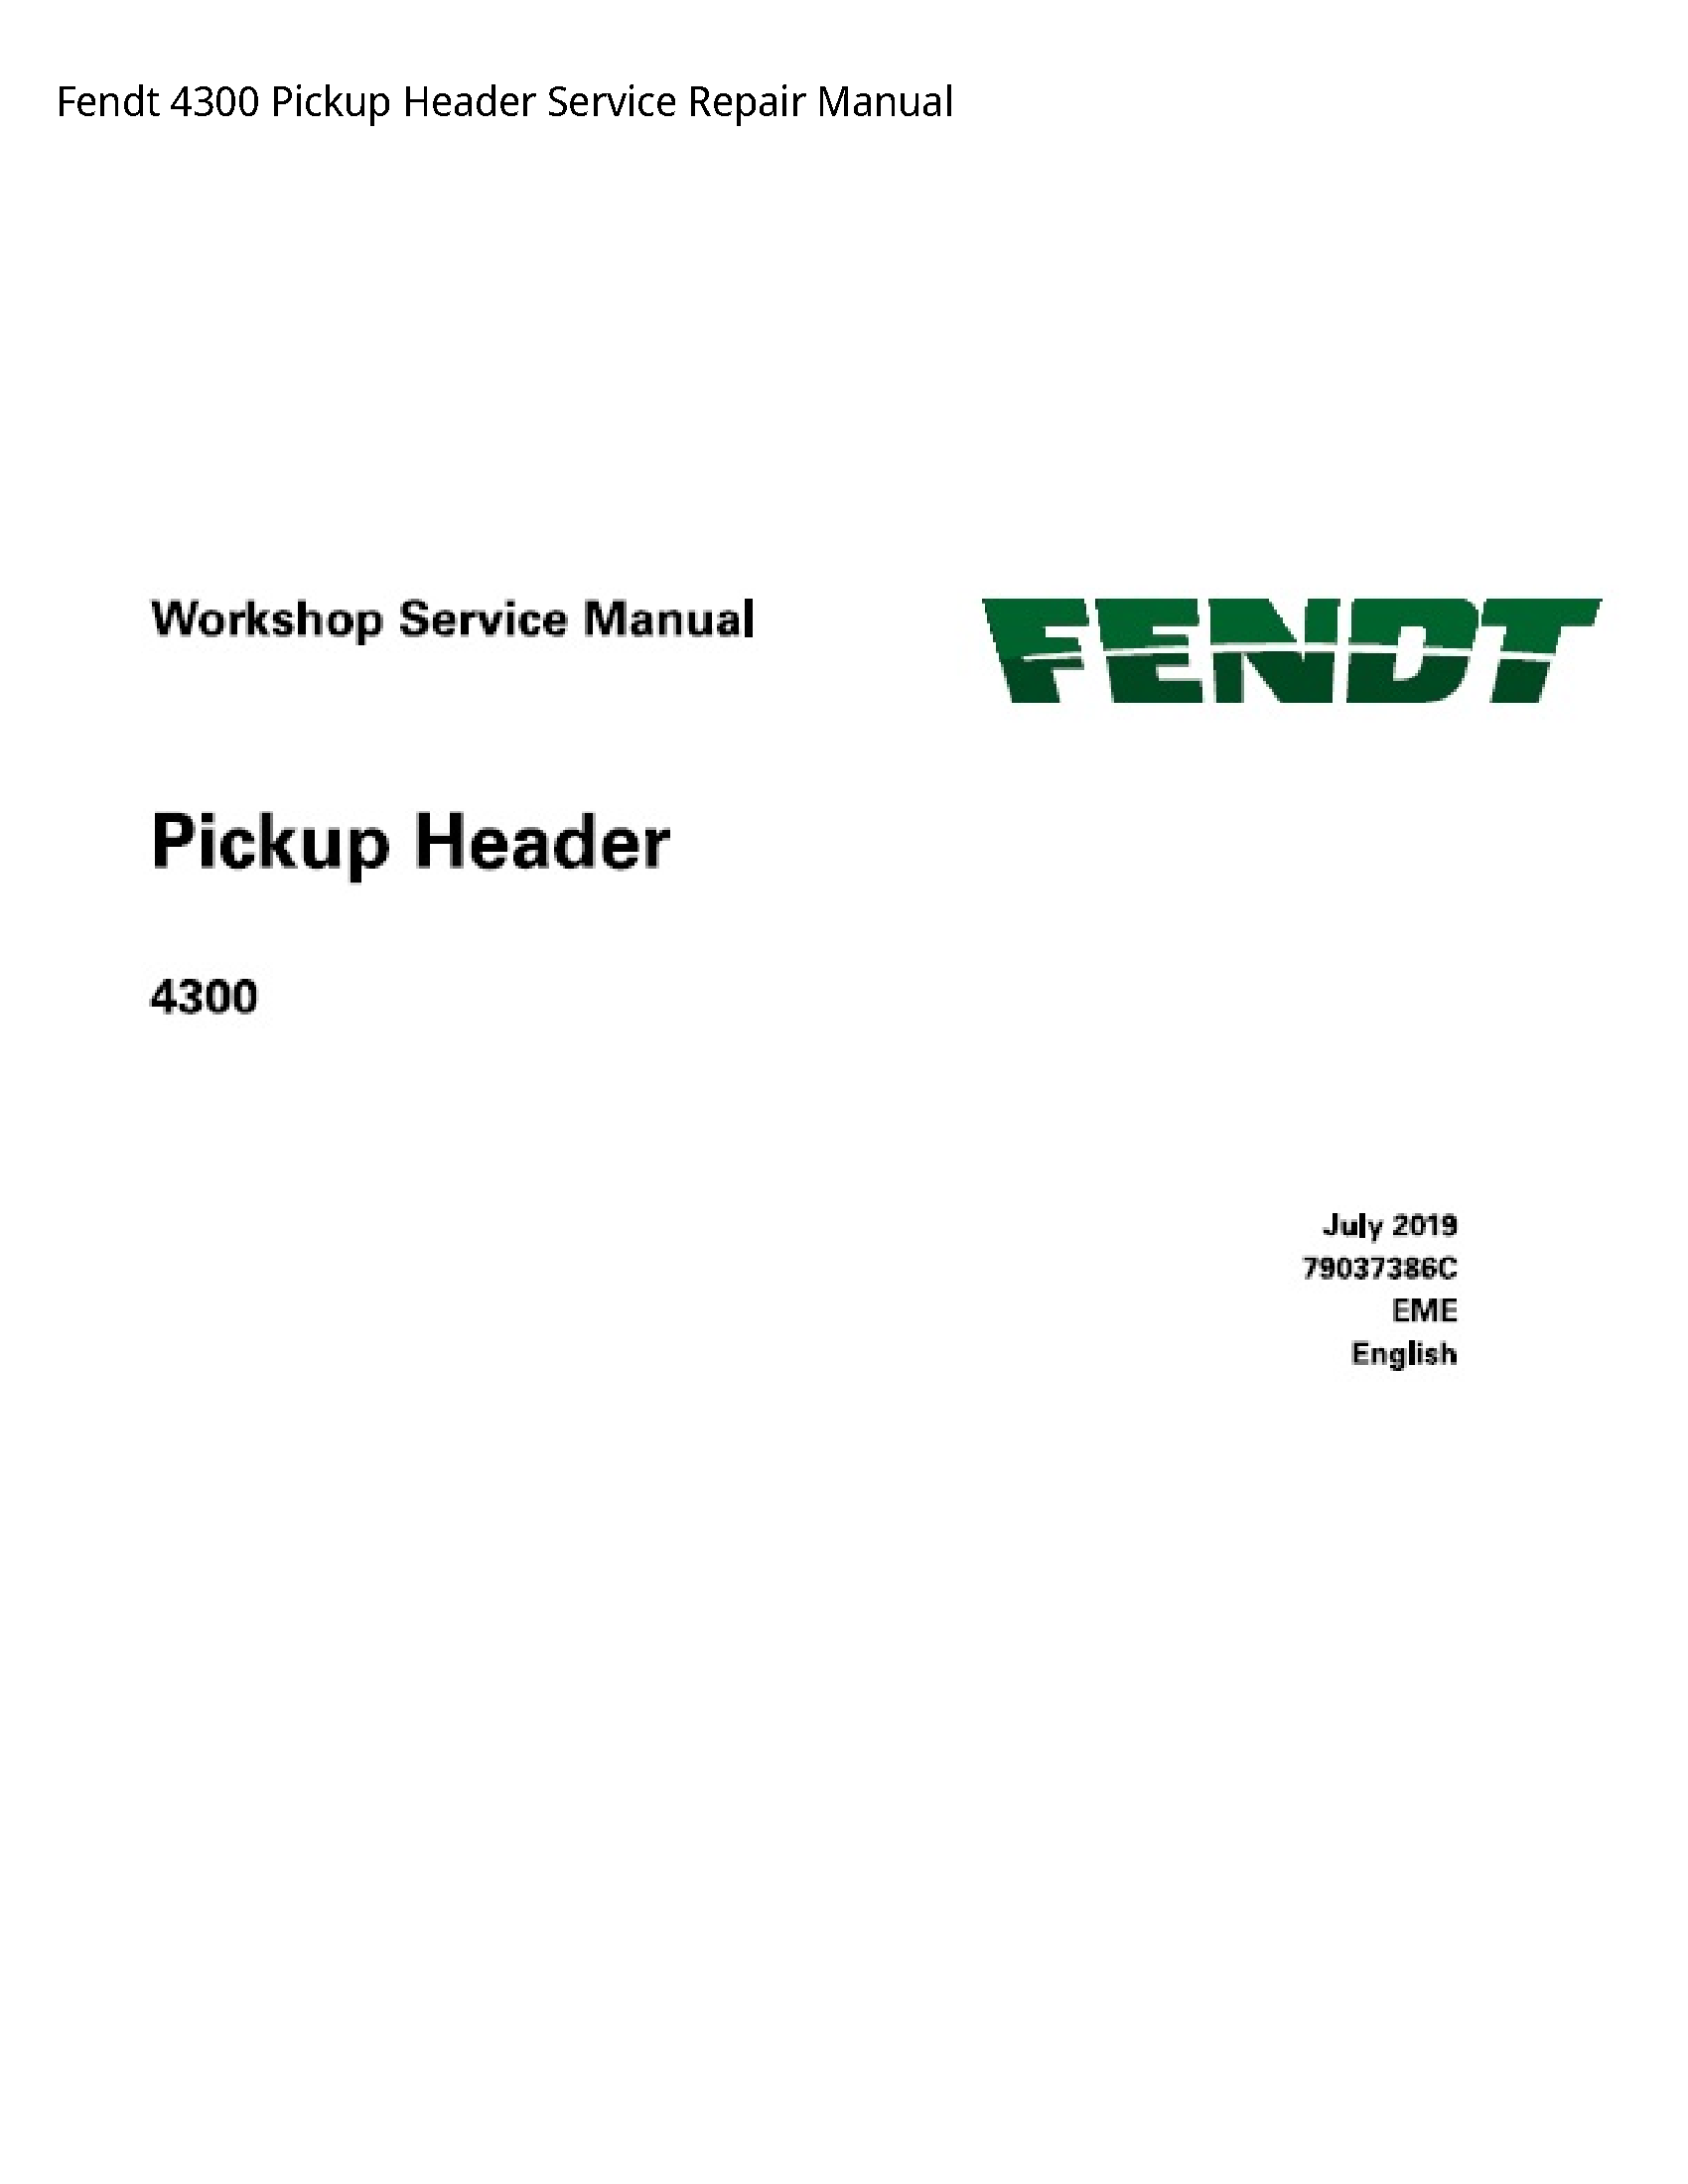 Fendt 4300 Pickup Header manual